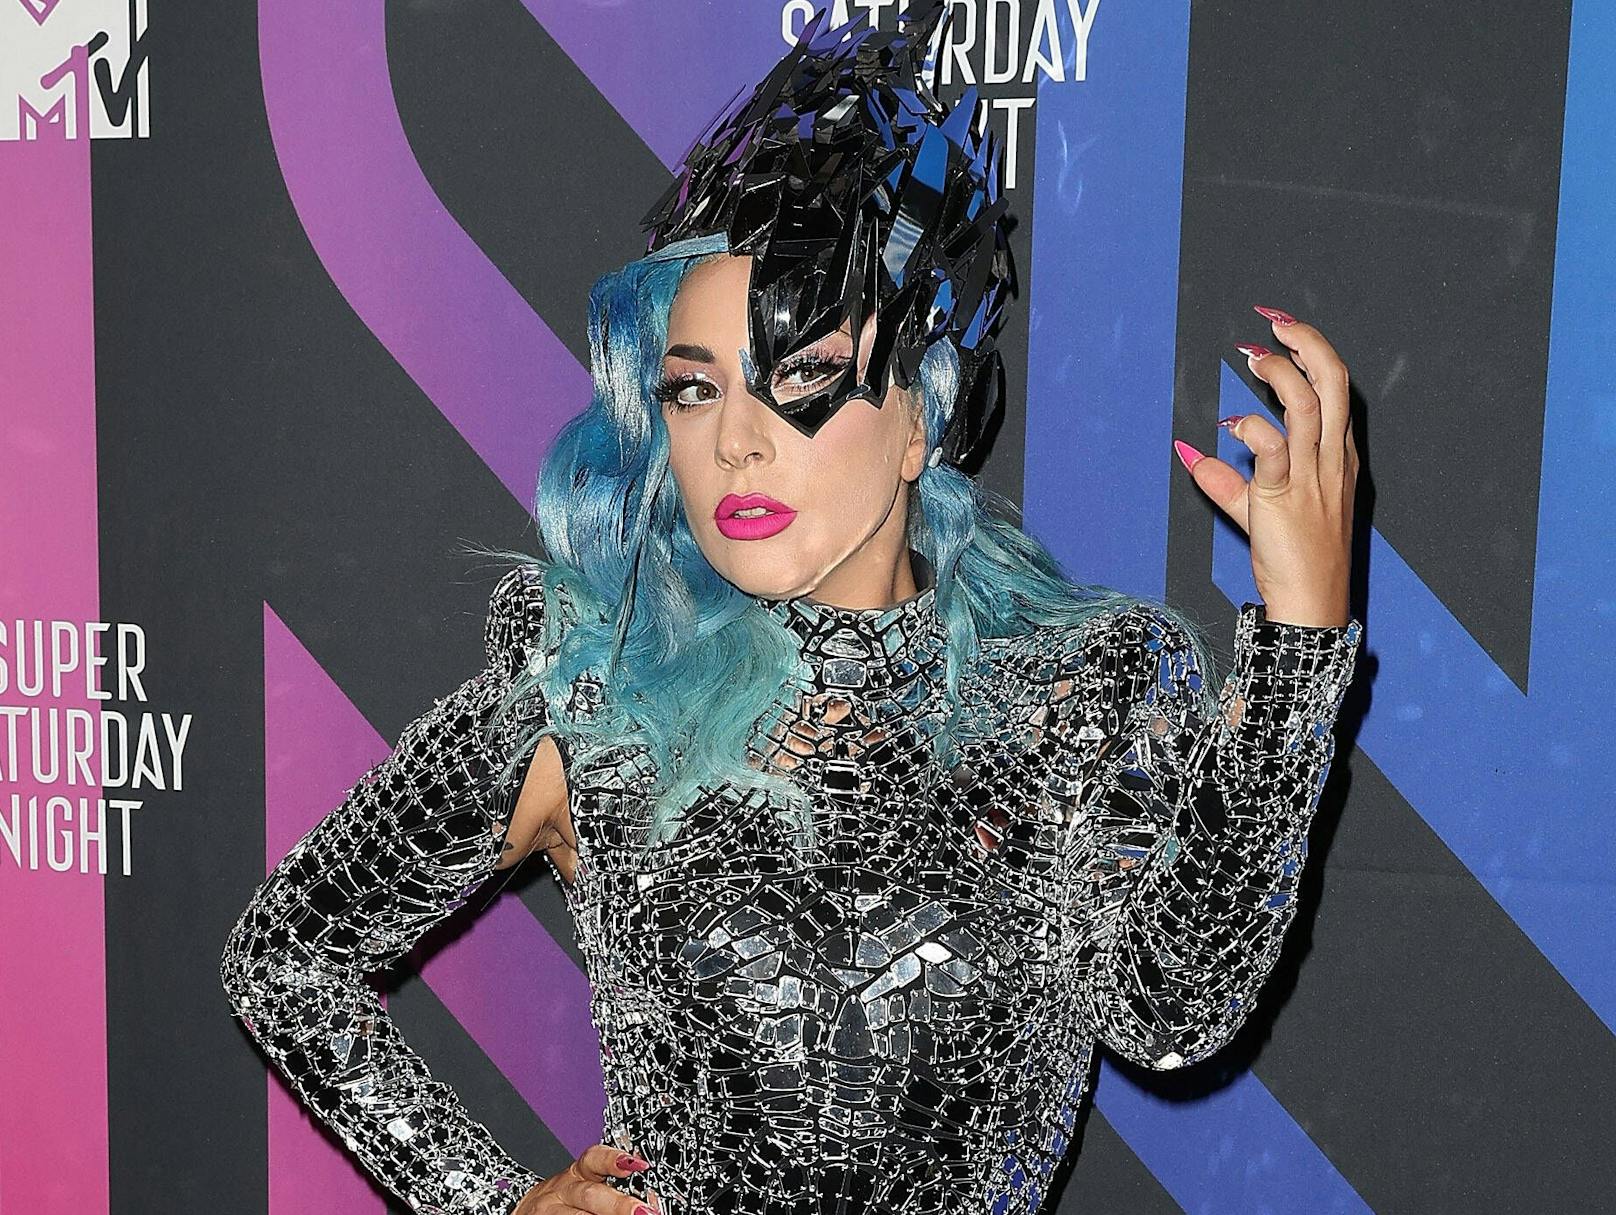 Bei ihren Show-Auftritten greift <strong>Lady Gaga</strong> zu auffälligen Outfits. Wenn sie Werbung für Kosmetik macht, verzichtet sie gerne auf überflüssigen Stoff.